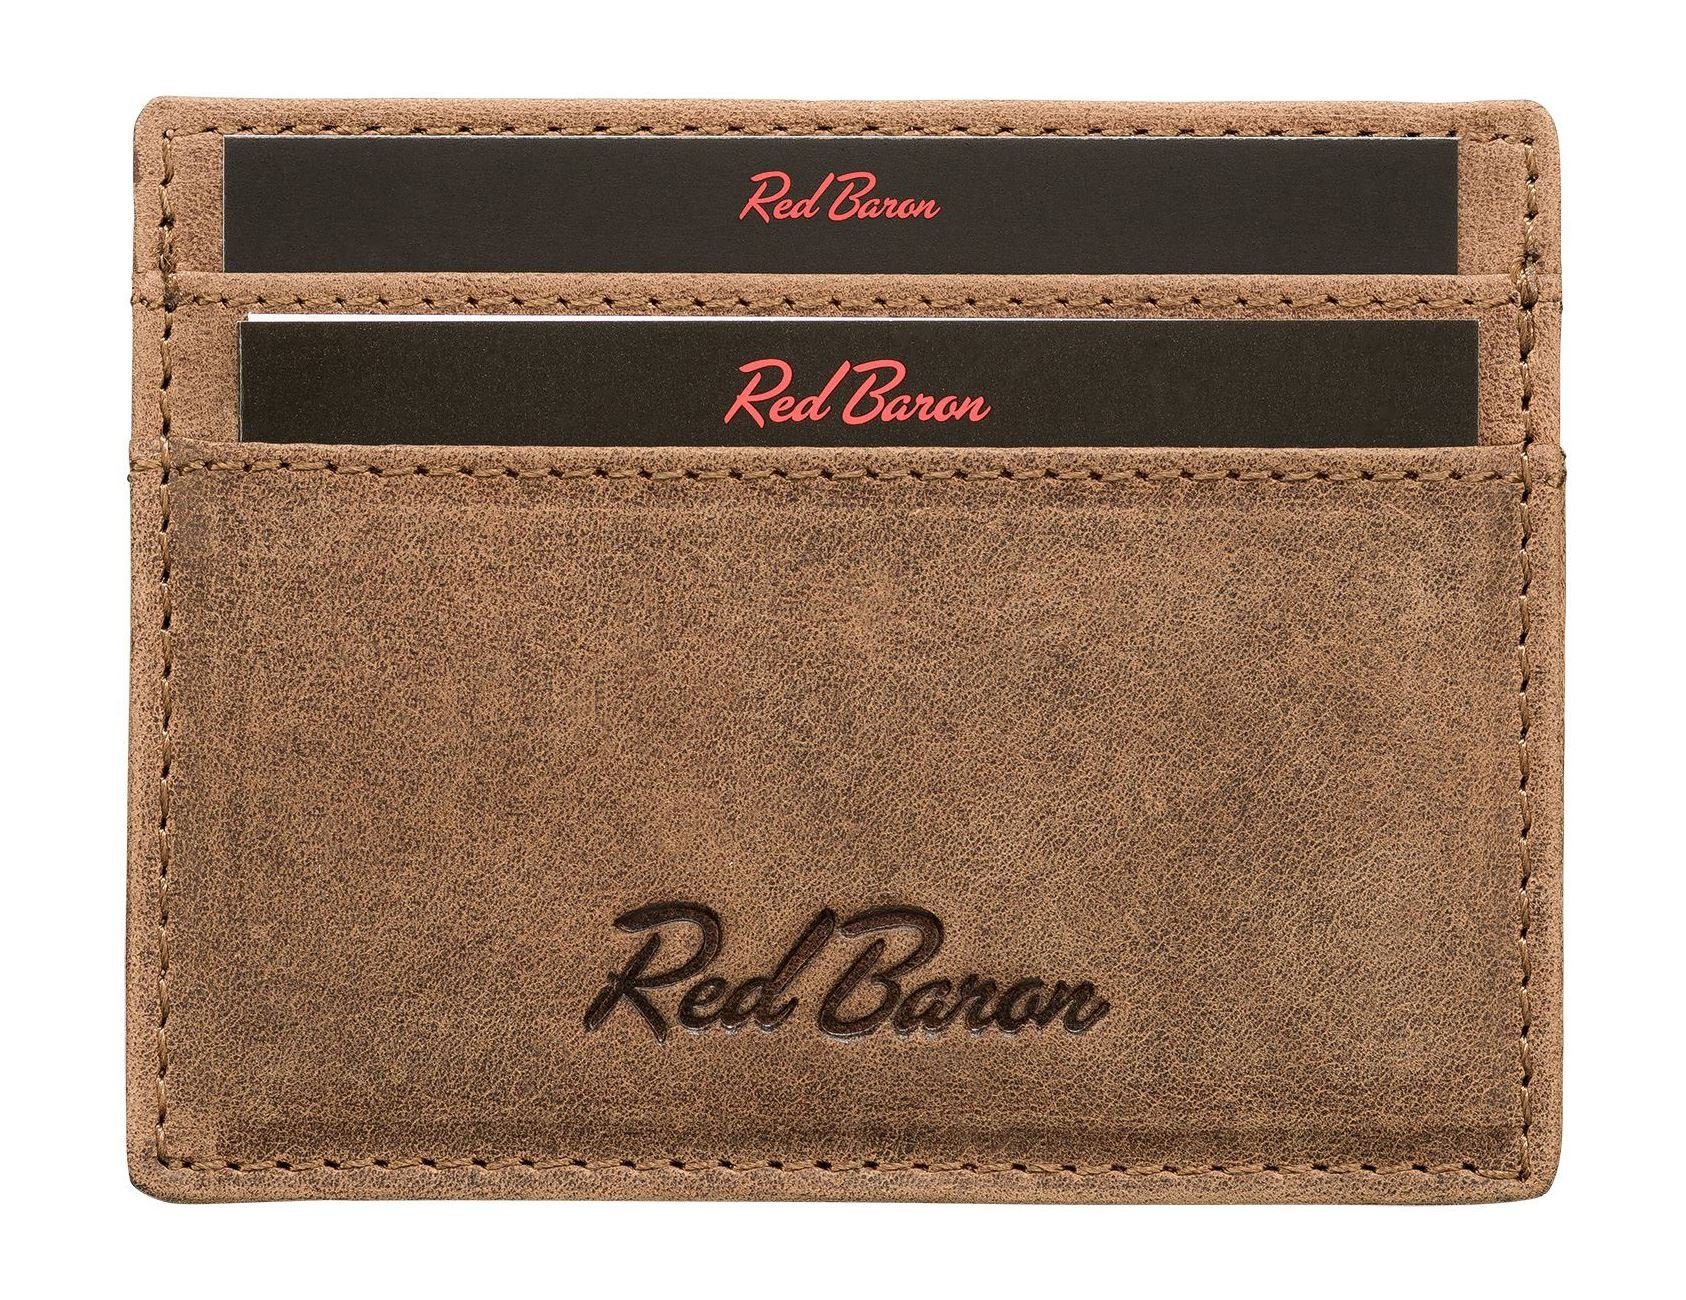 Leder, Baron Red einfach Kartenetui RB-CC-001-05, 4 Kreditkartenfächer, schlicht,